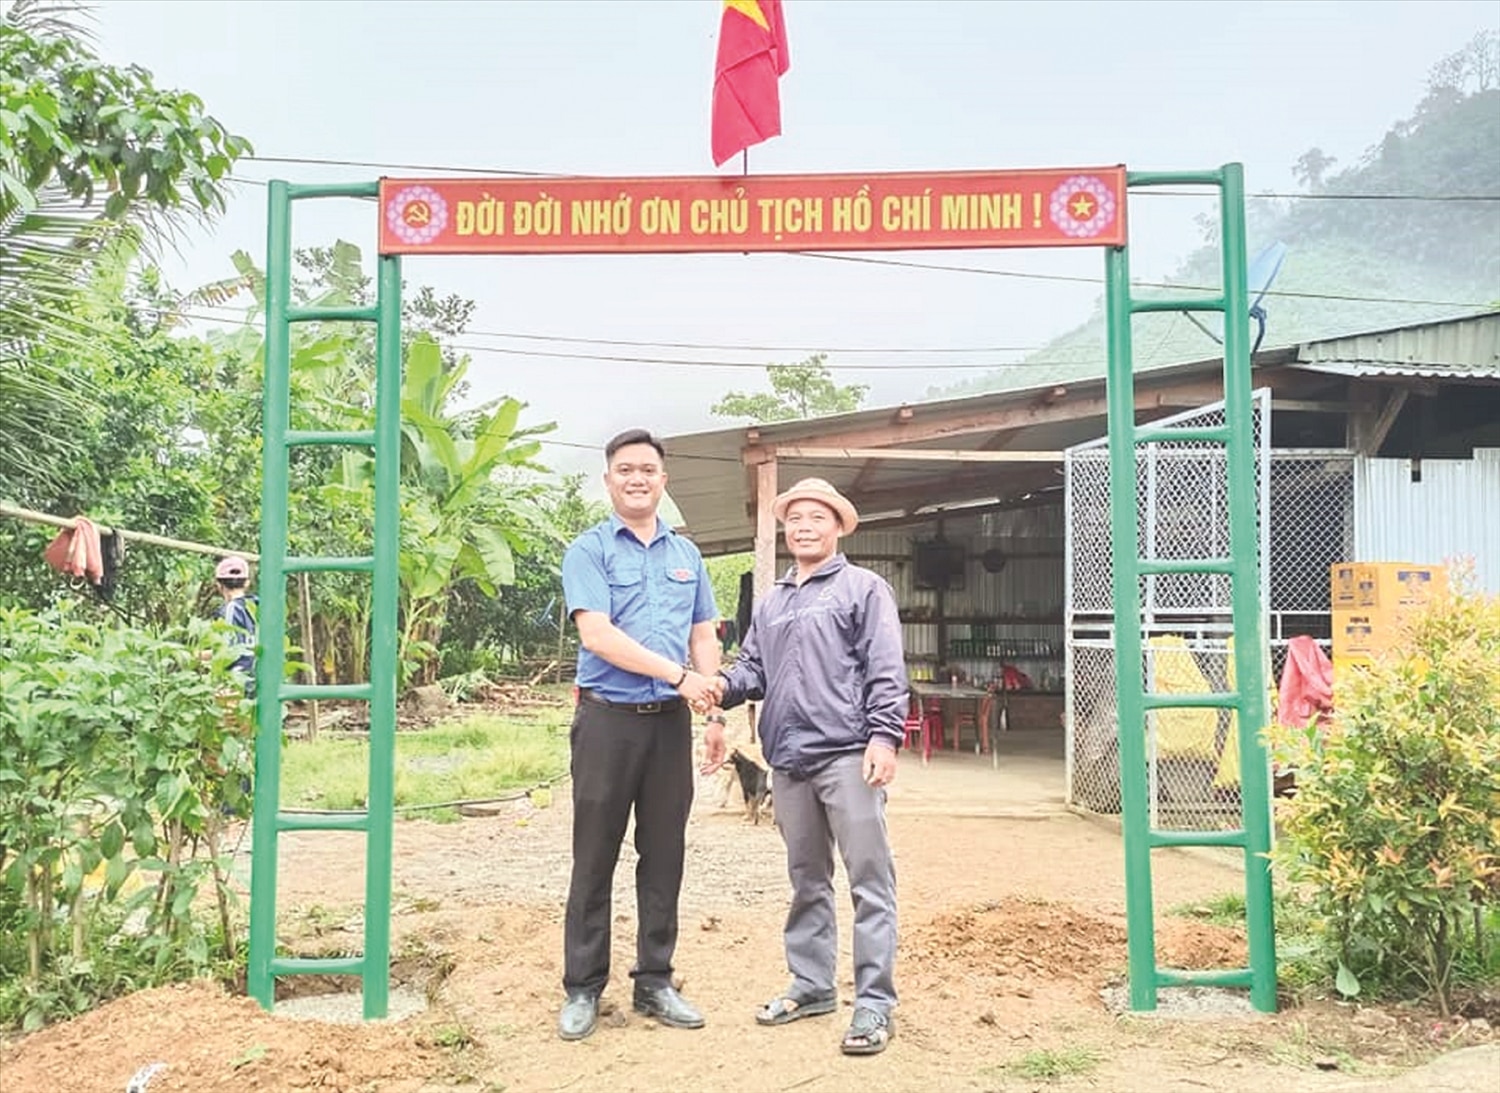 Người dân Tà Riềng cùng các cấp chính quyền triển khai xây dựng tường rào, cổng ngõ, biển khẩu hiệu... cho làng mình